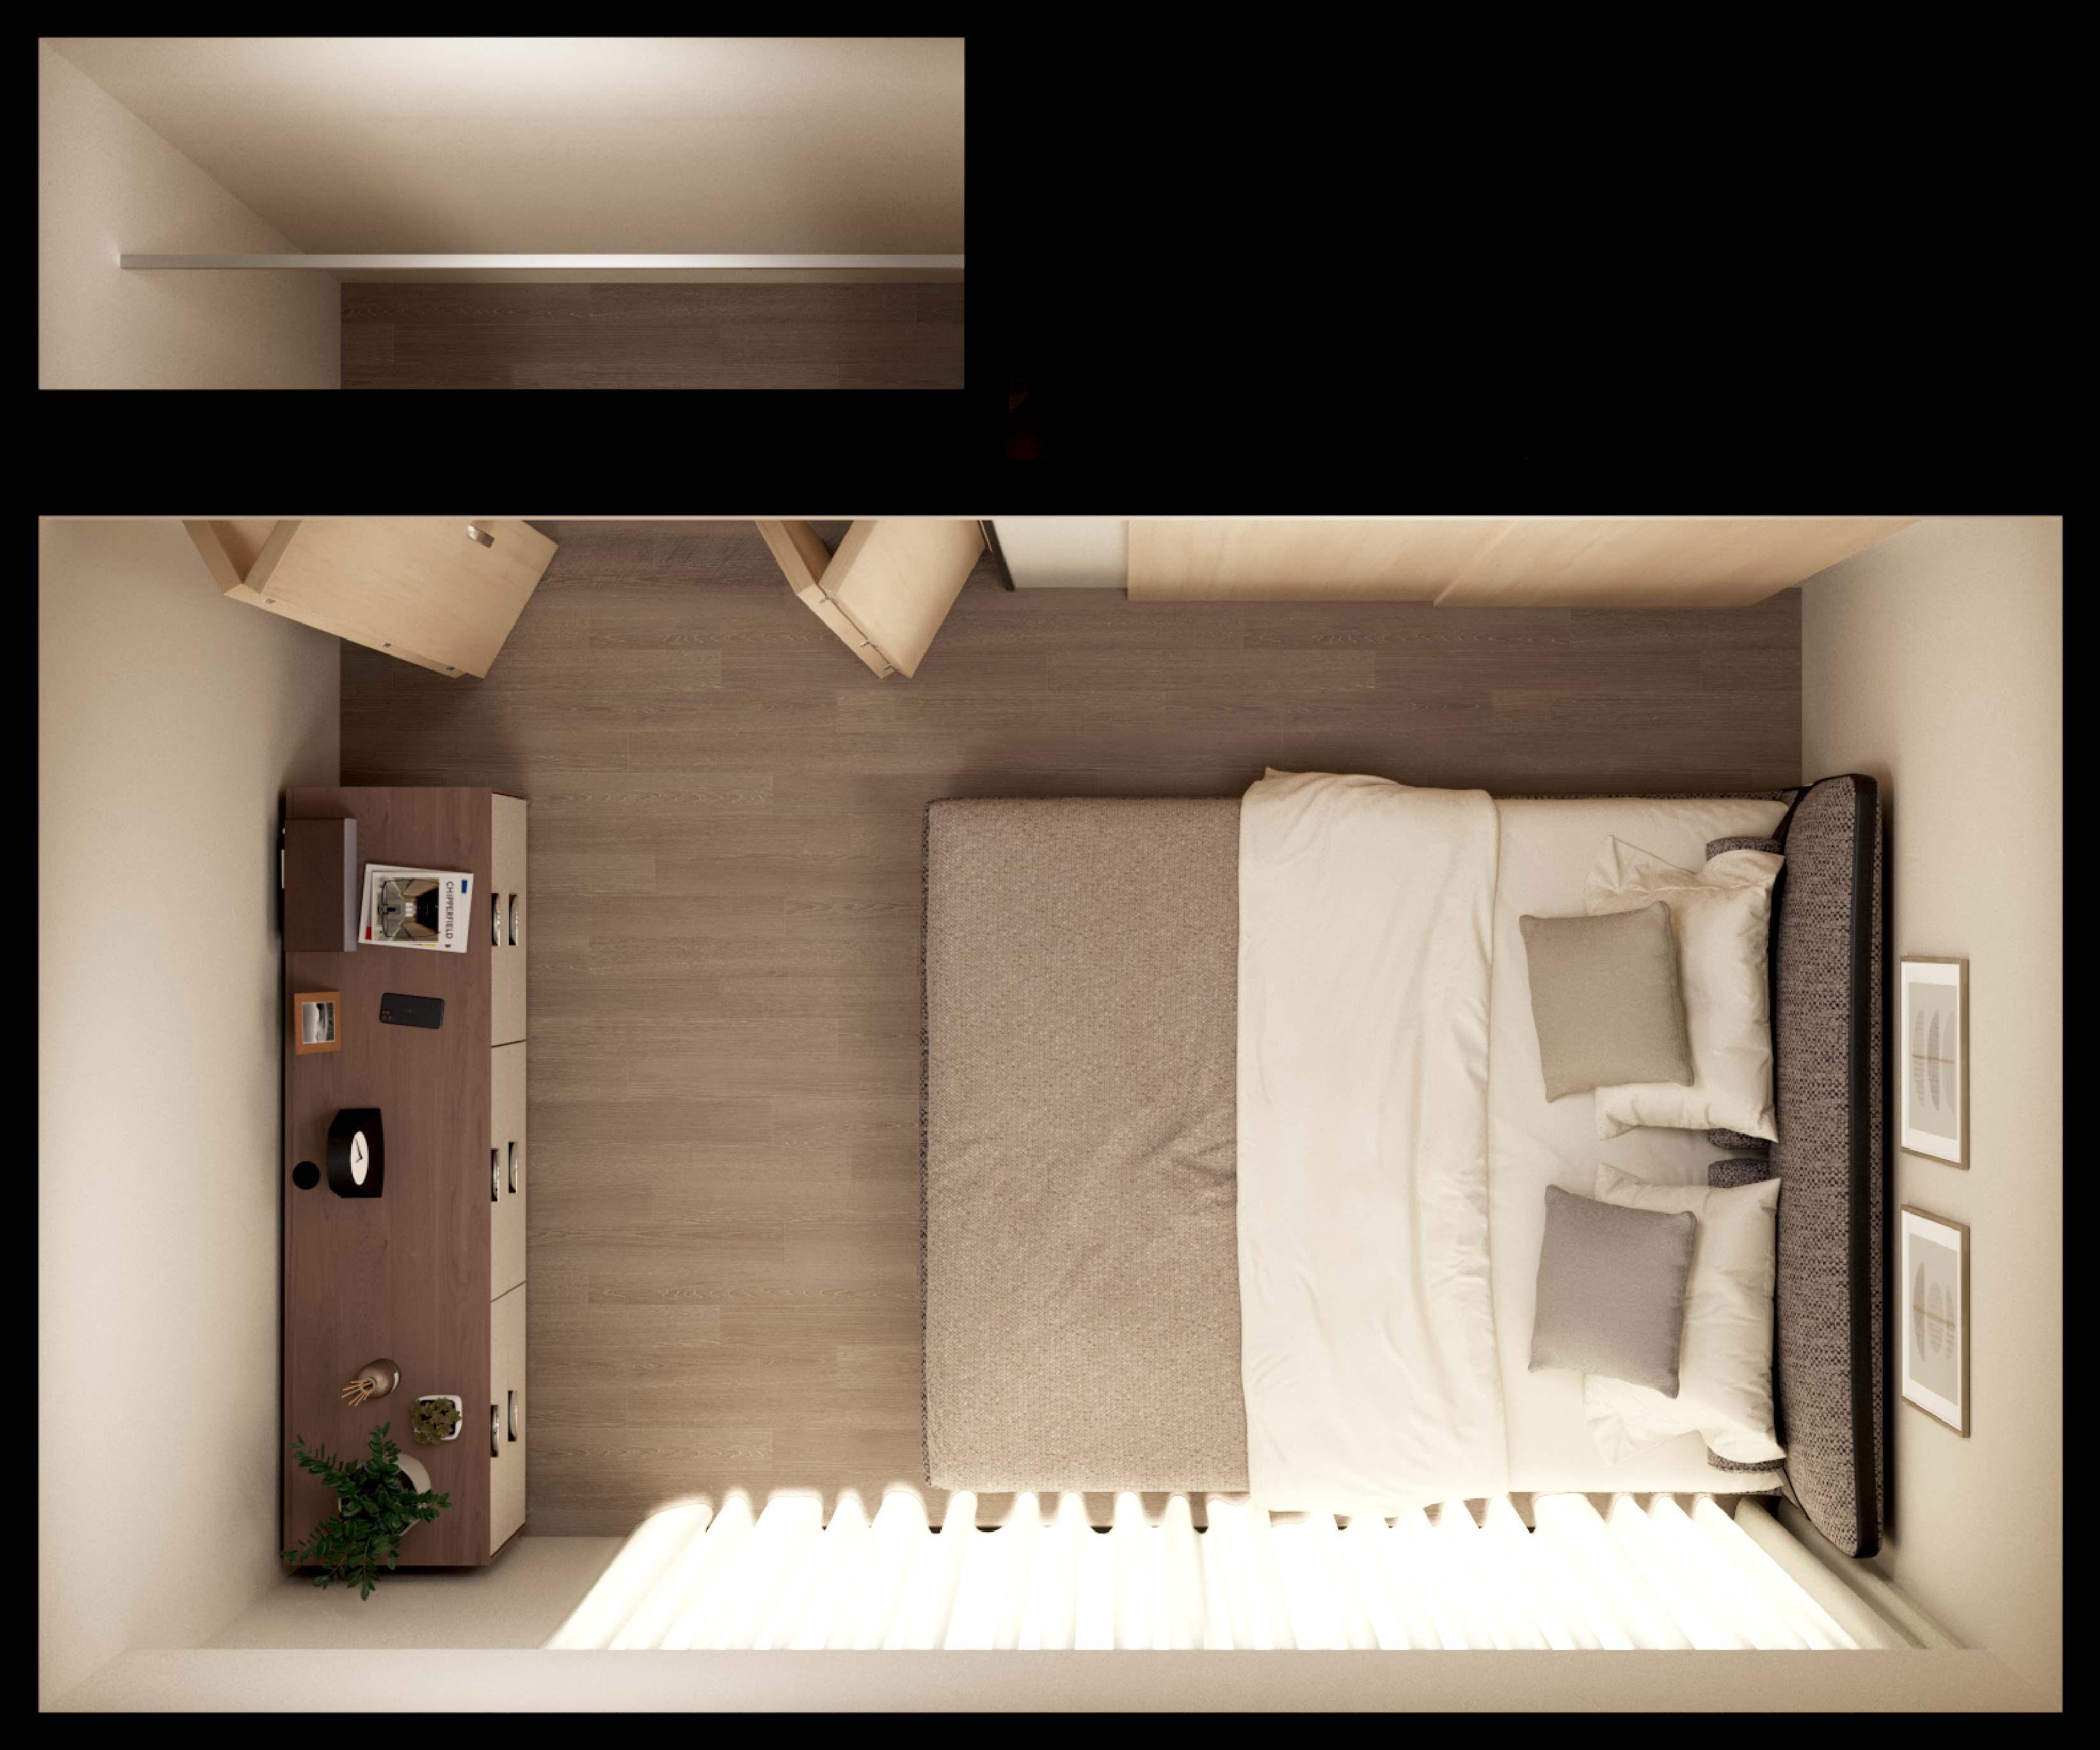 クイーンサイズのベッドのある6畳寝室レイアウトの見取り図